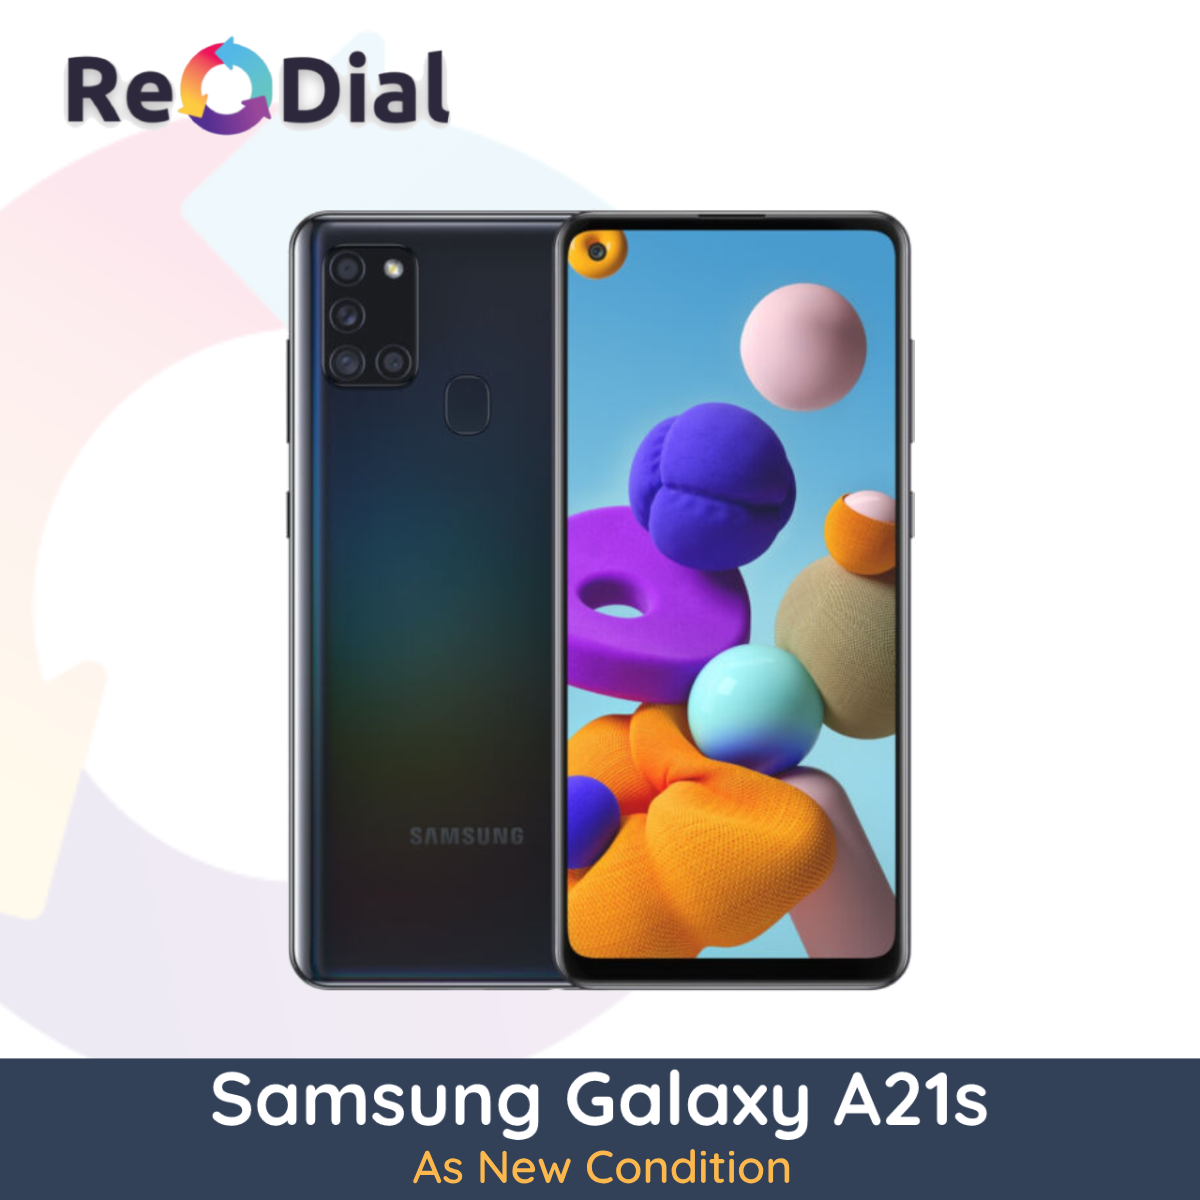 Samsung Galaxy A21s - As New (Premium)